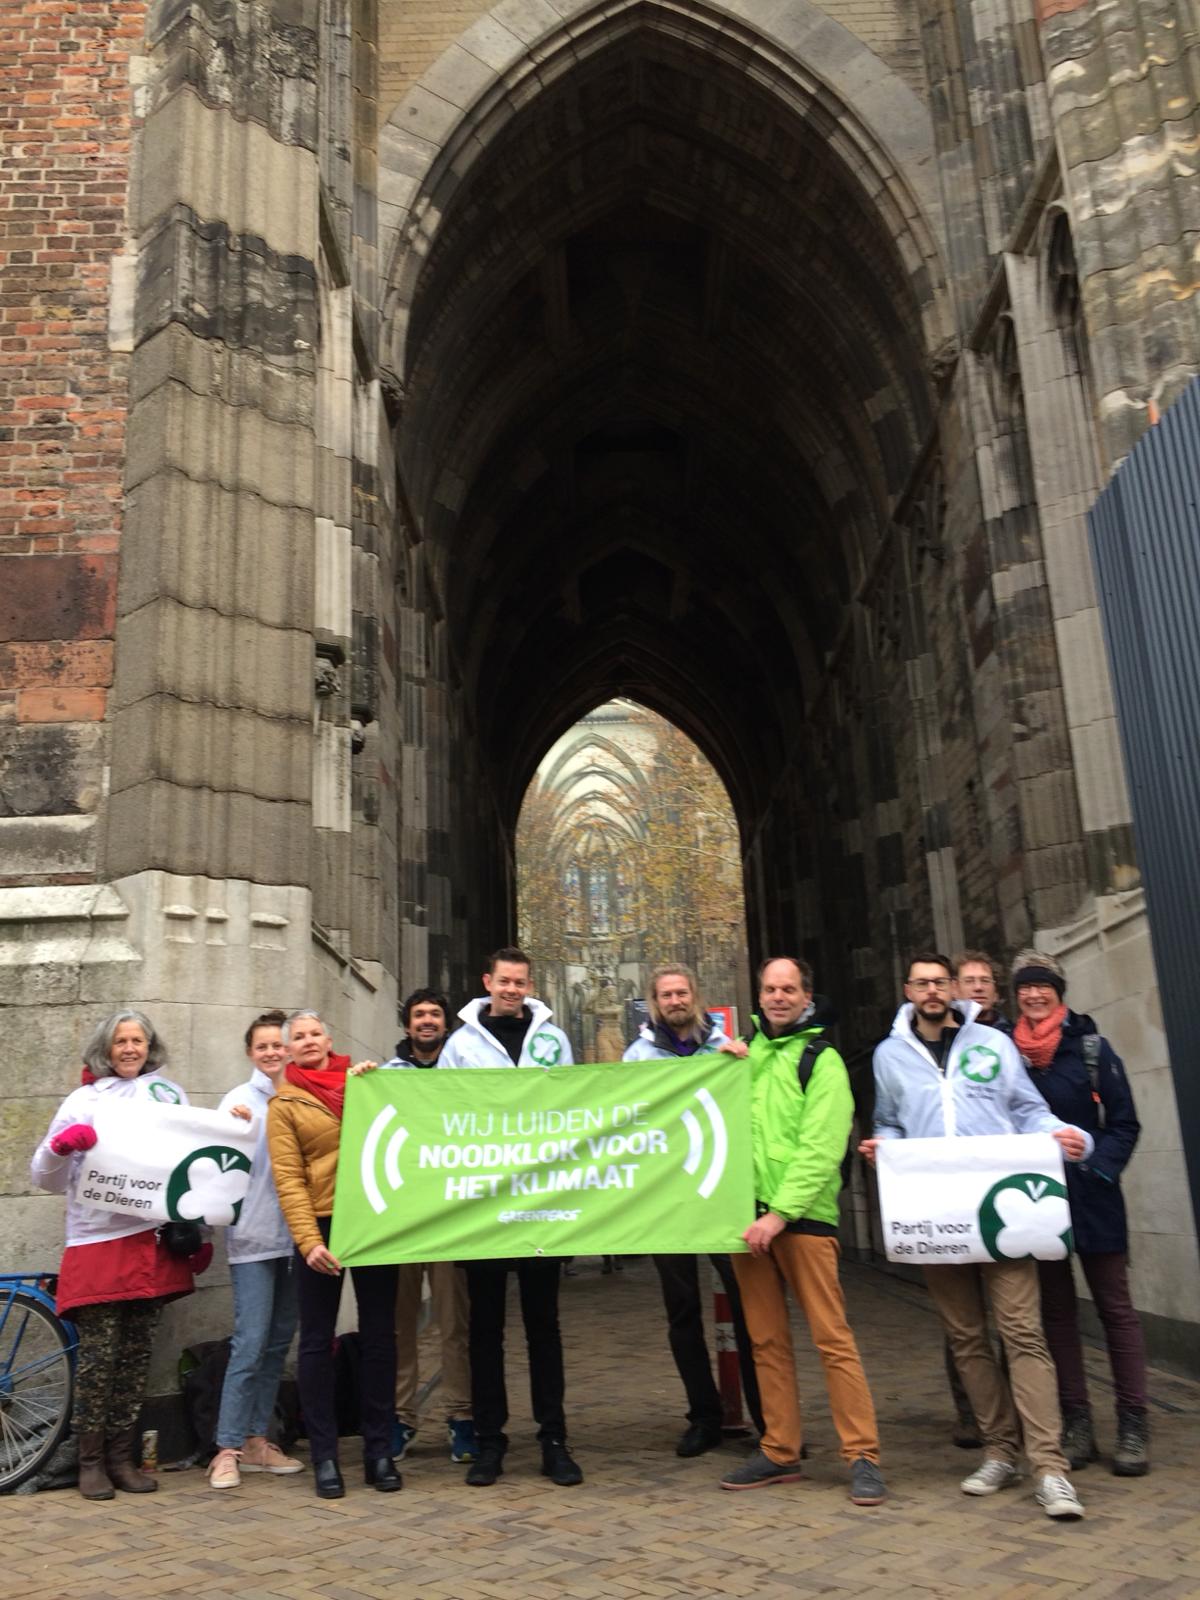 Deelnemers aan de actie bij de Domtoren in Utrecht